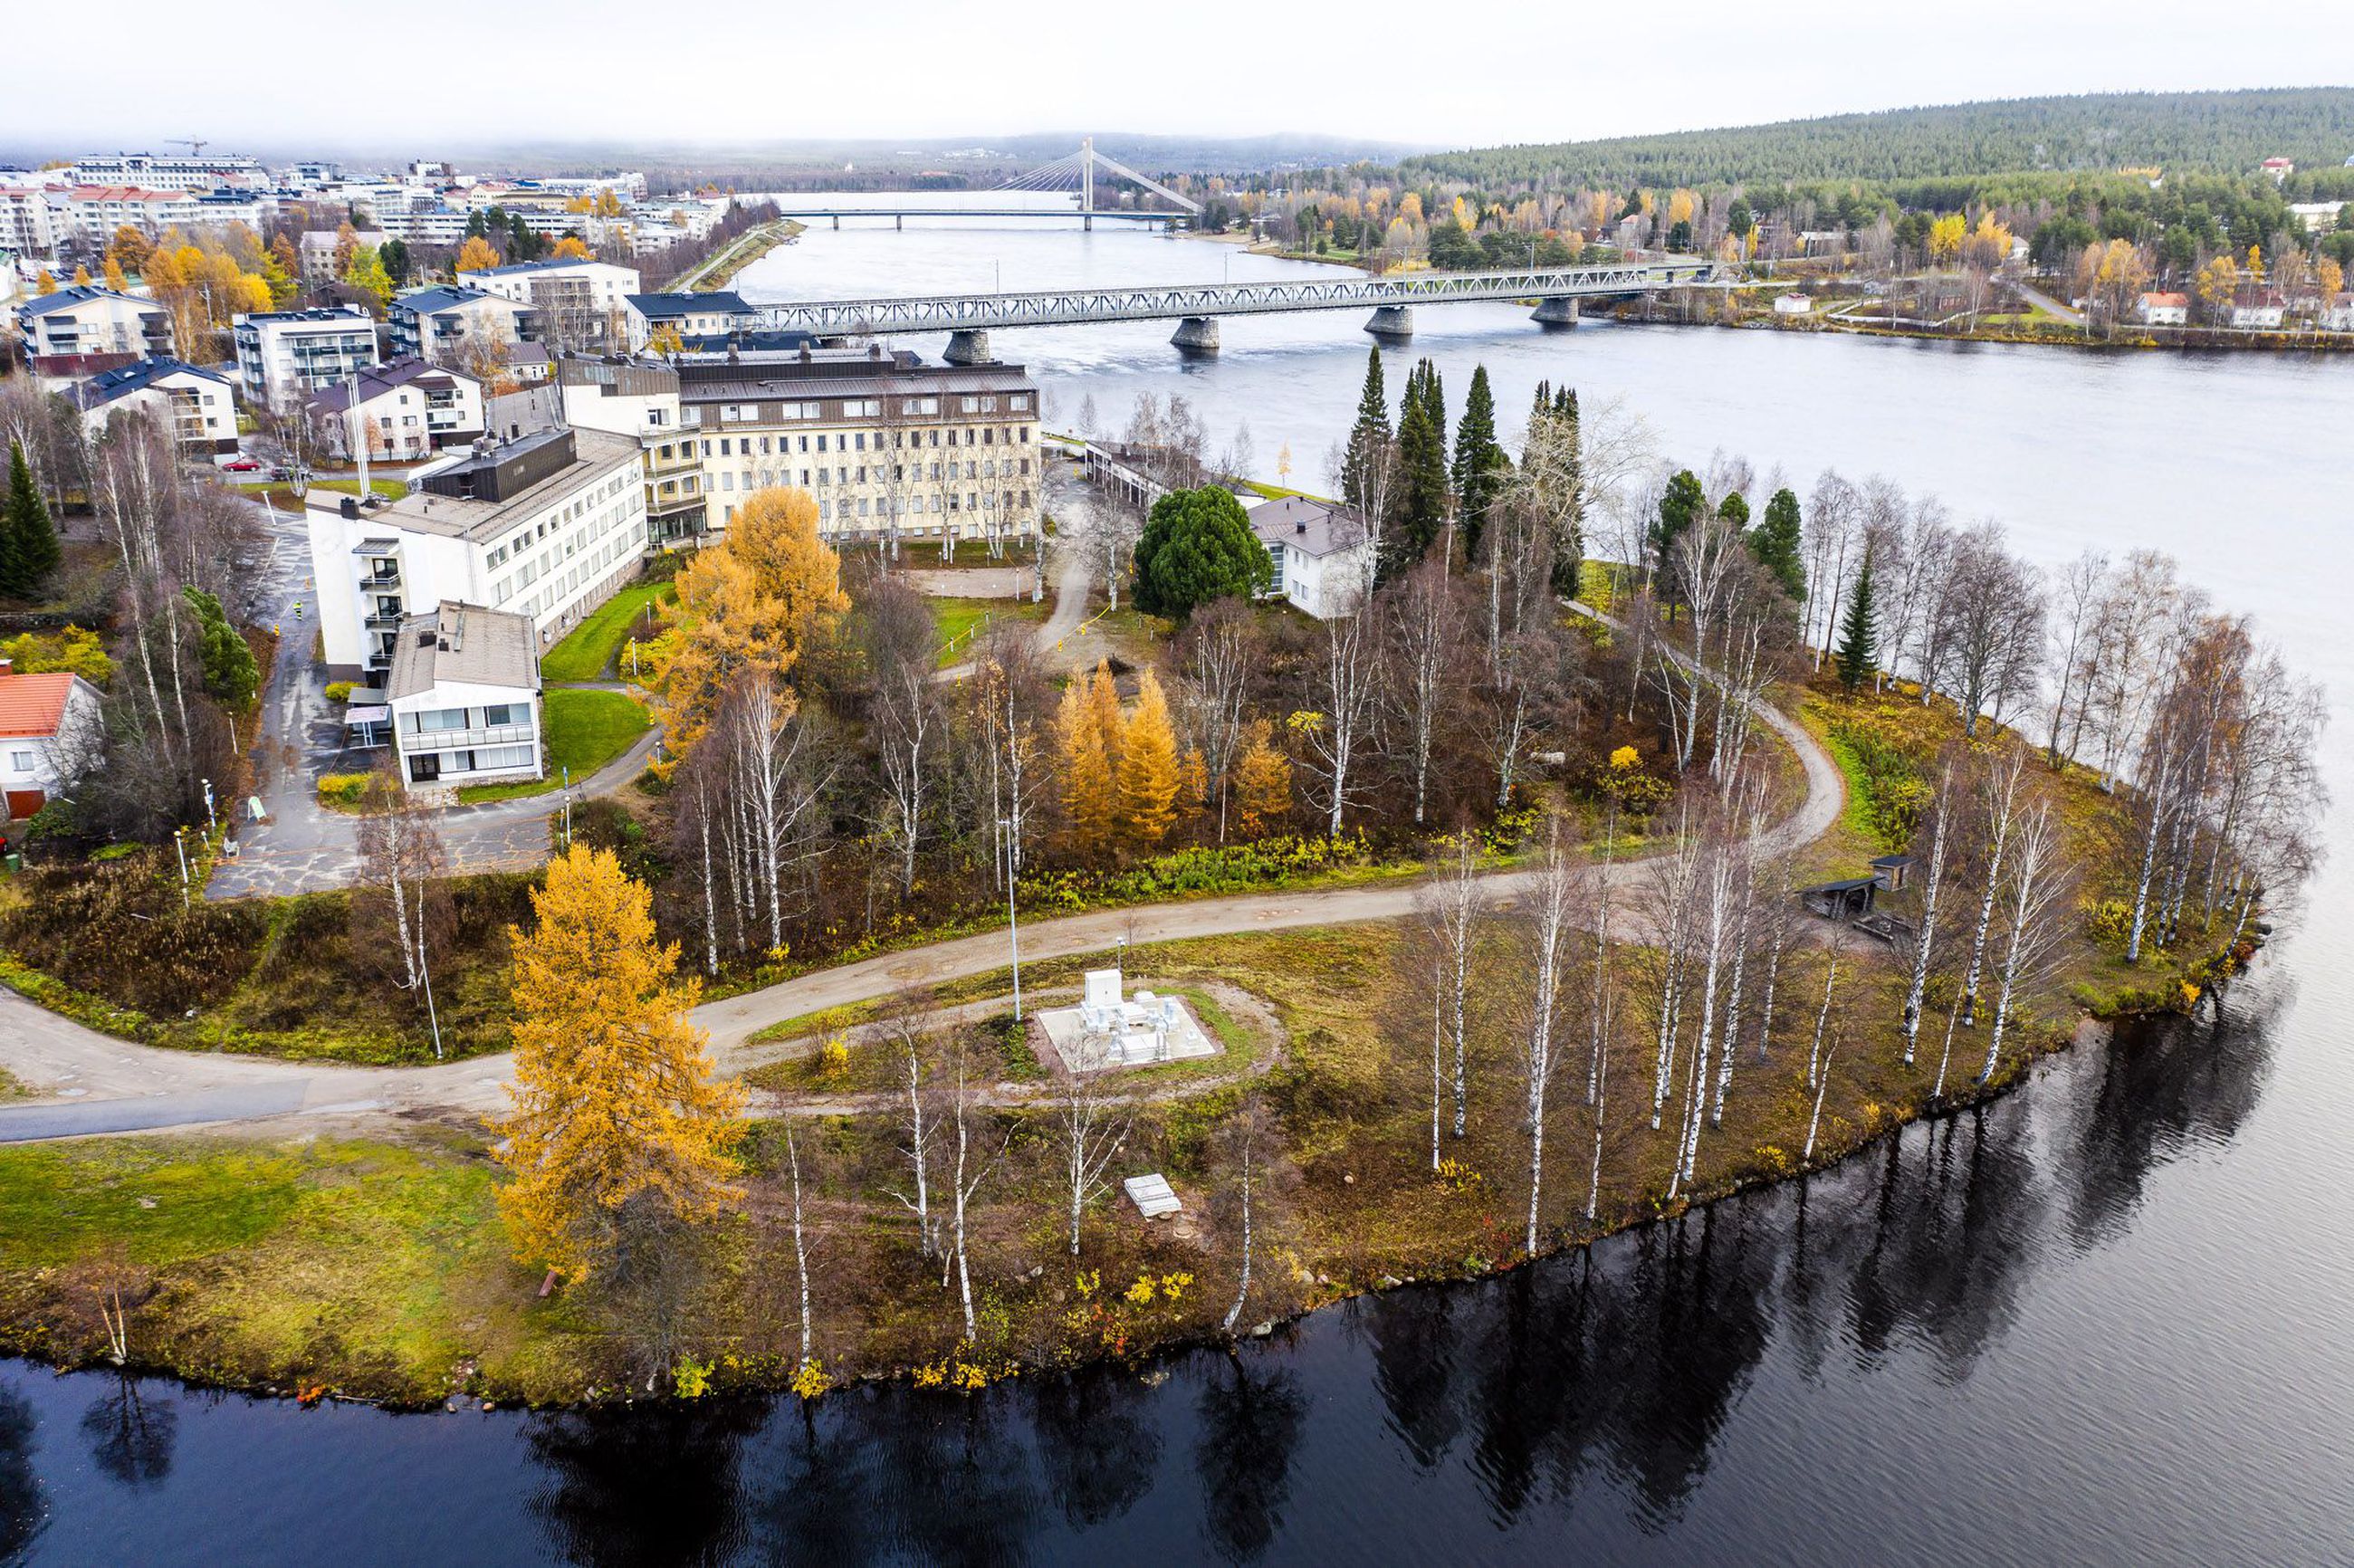 Sairaalanniemen kaavoitusta jatketaan Kruunu & Laavu -suunnitelman  pohjalta, puistoalueita laajennettu huomattavasti | Lapin Kansa